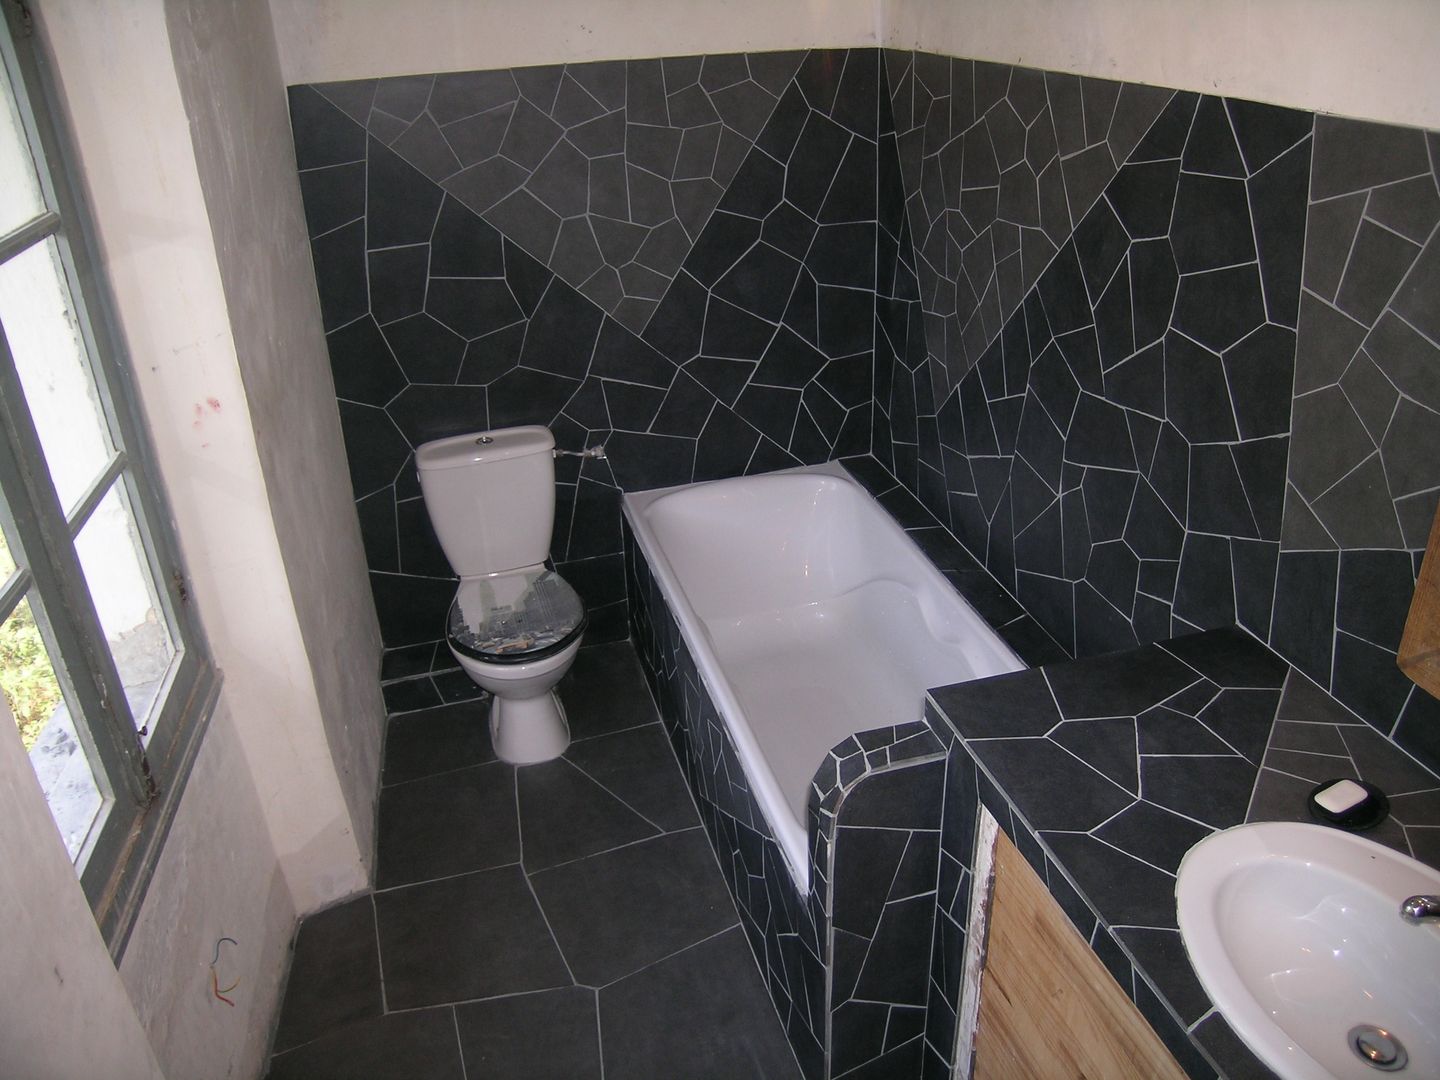 Mozaique, Moz-art mosaique Moz-art mosaique Modern bathroom Fittings